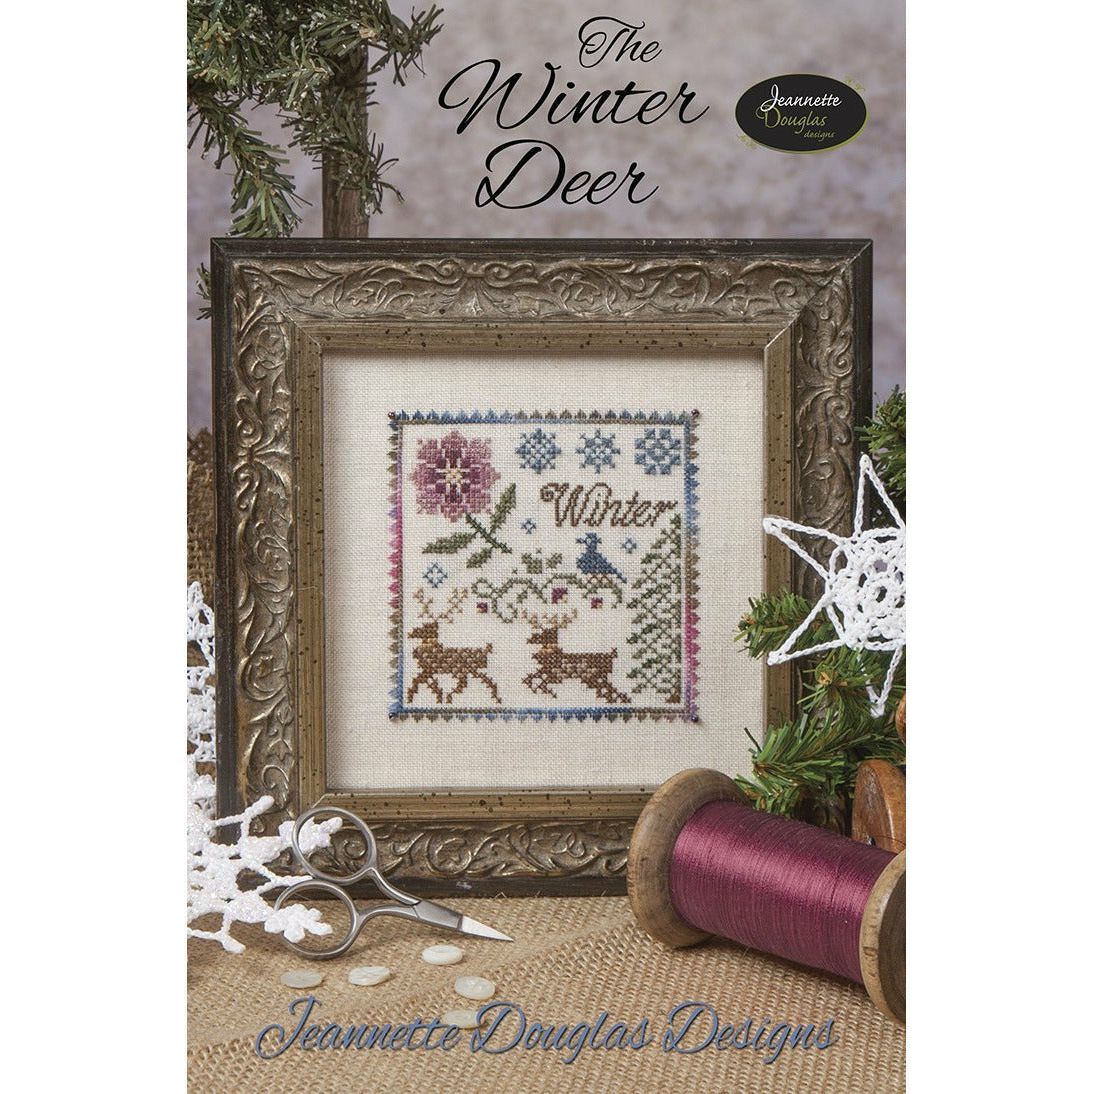 Jeannette Douglas Designs | The Winter Deer Pattern